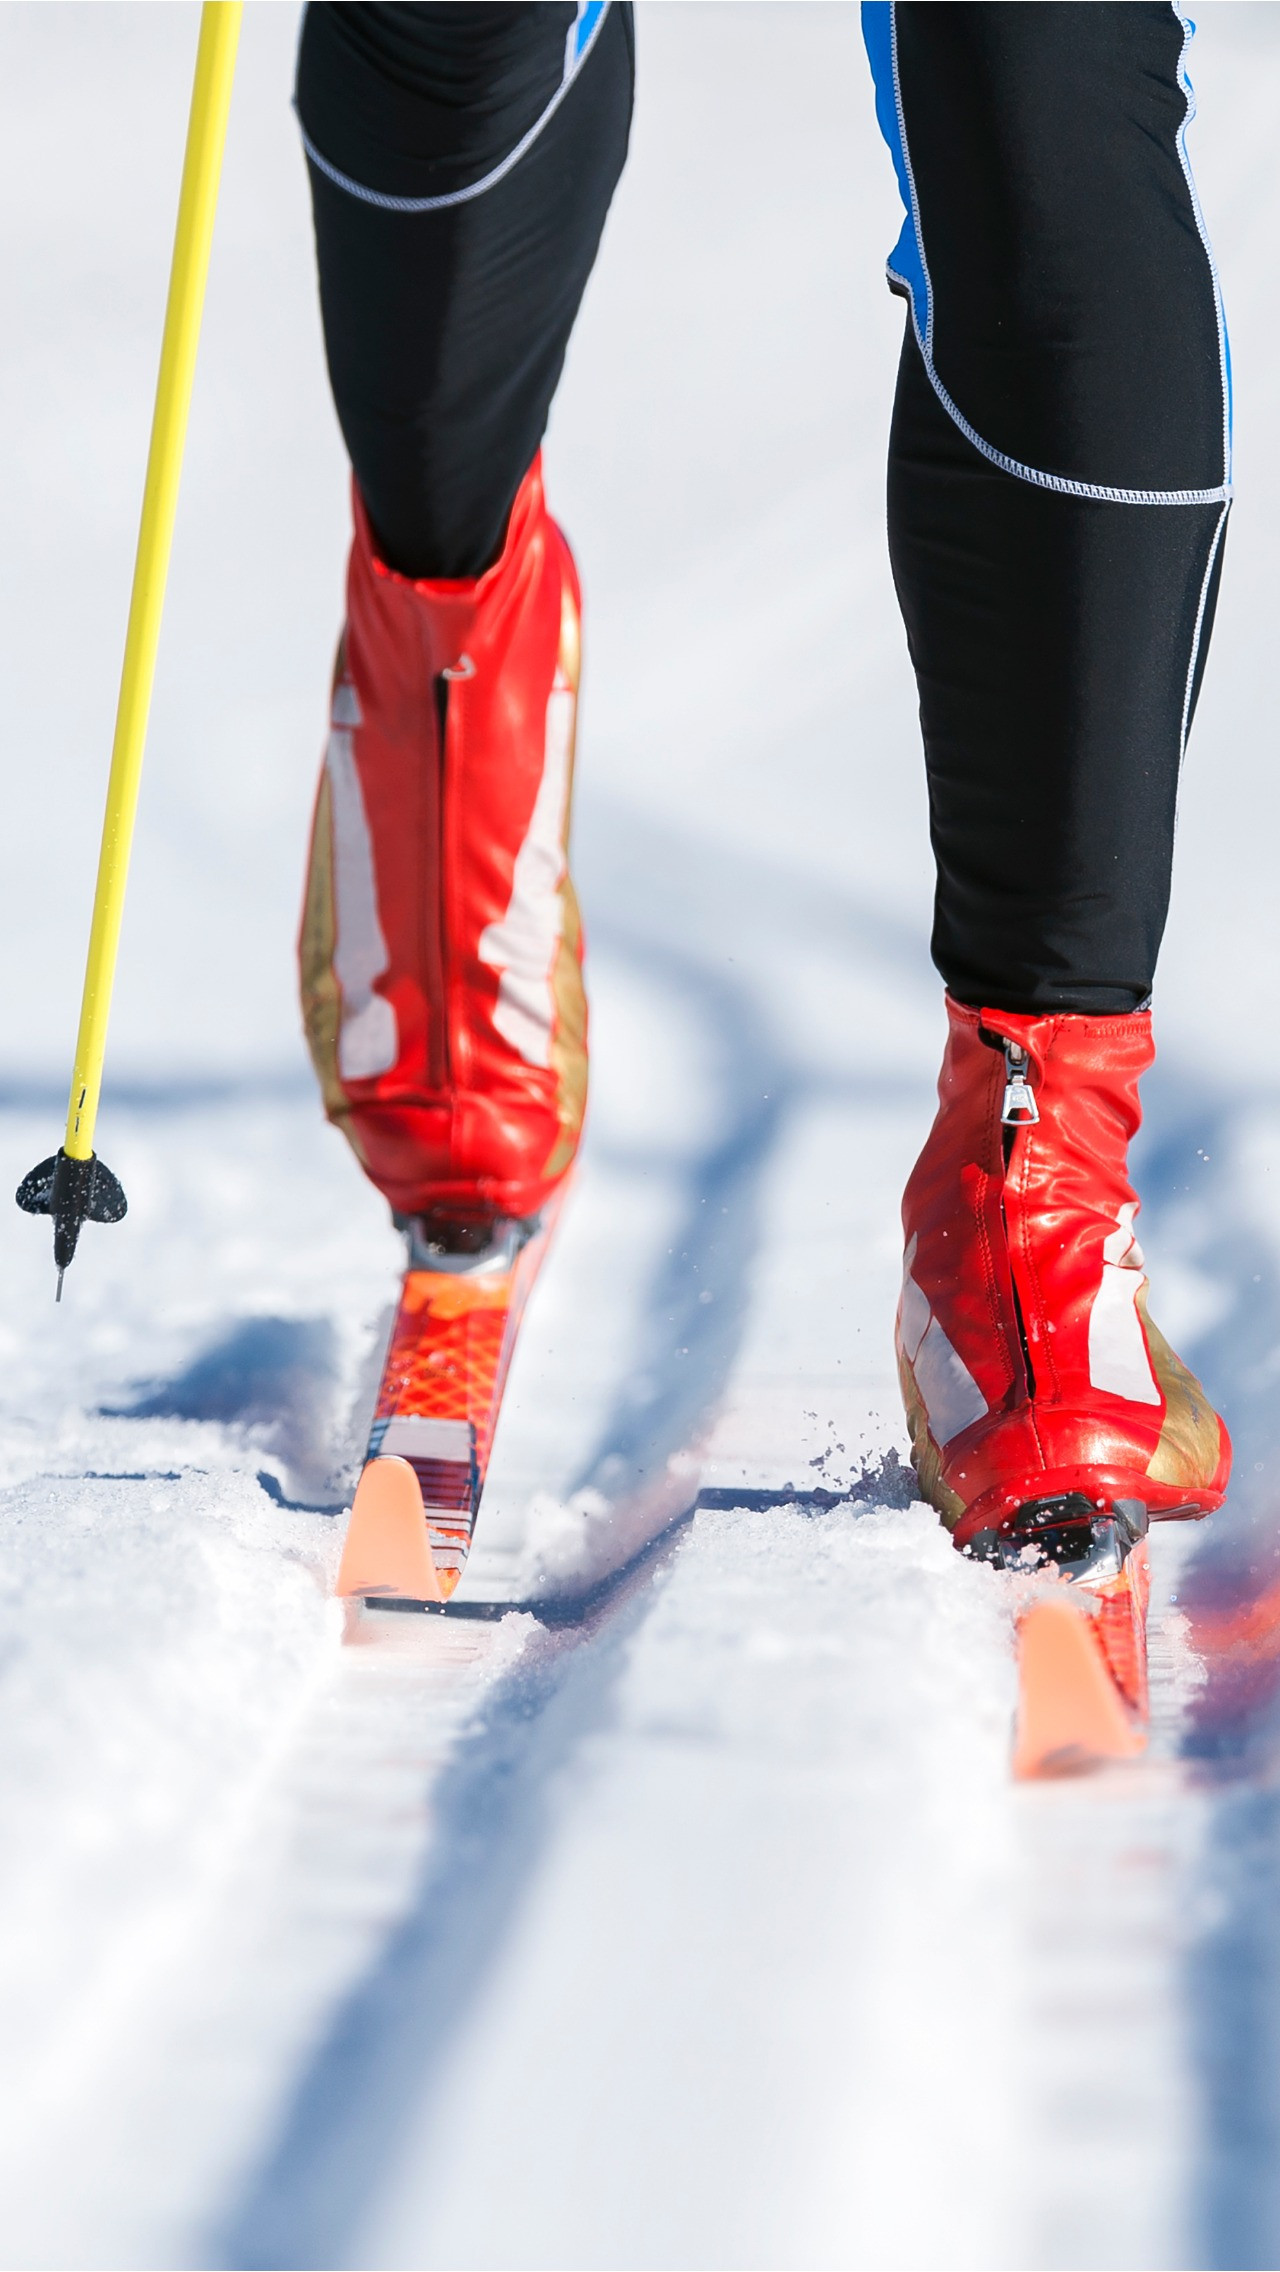 1 января:<br/>
Лыжные гонки. Кубок мира. Тур де ски